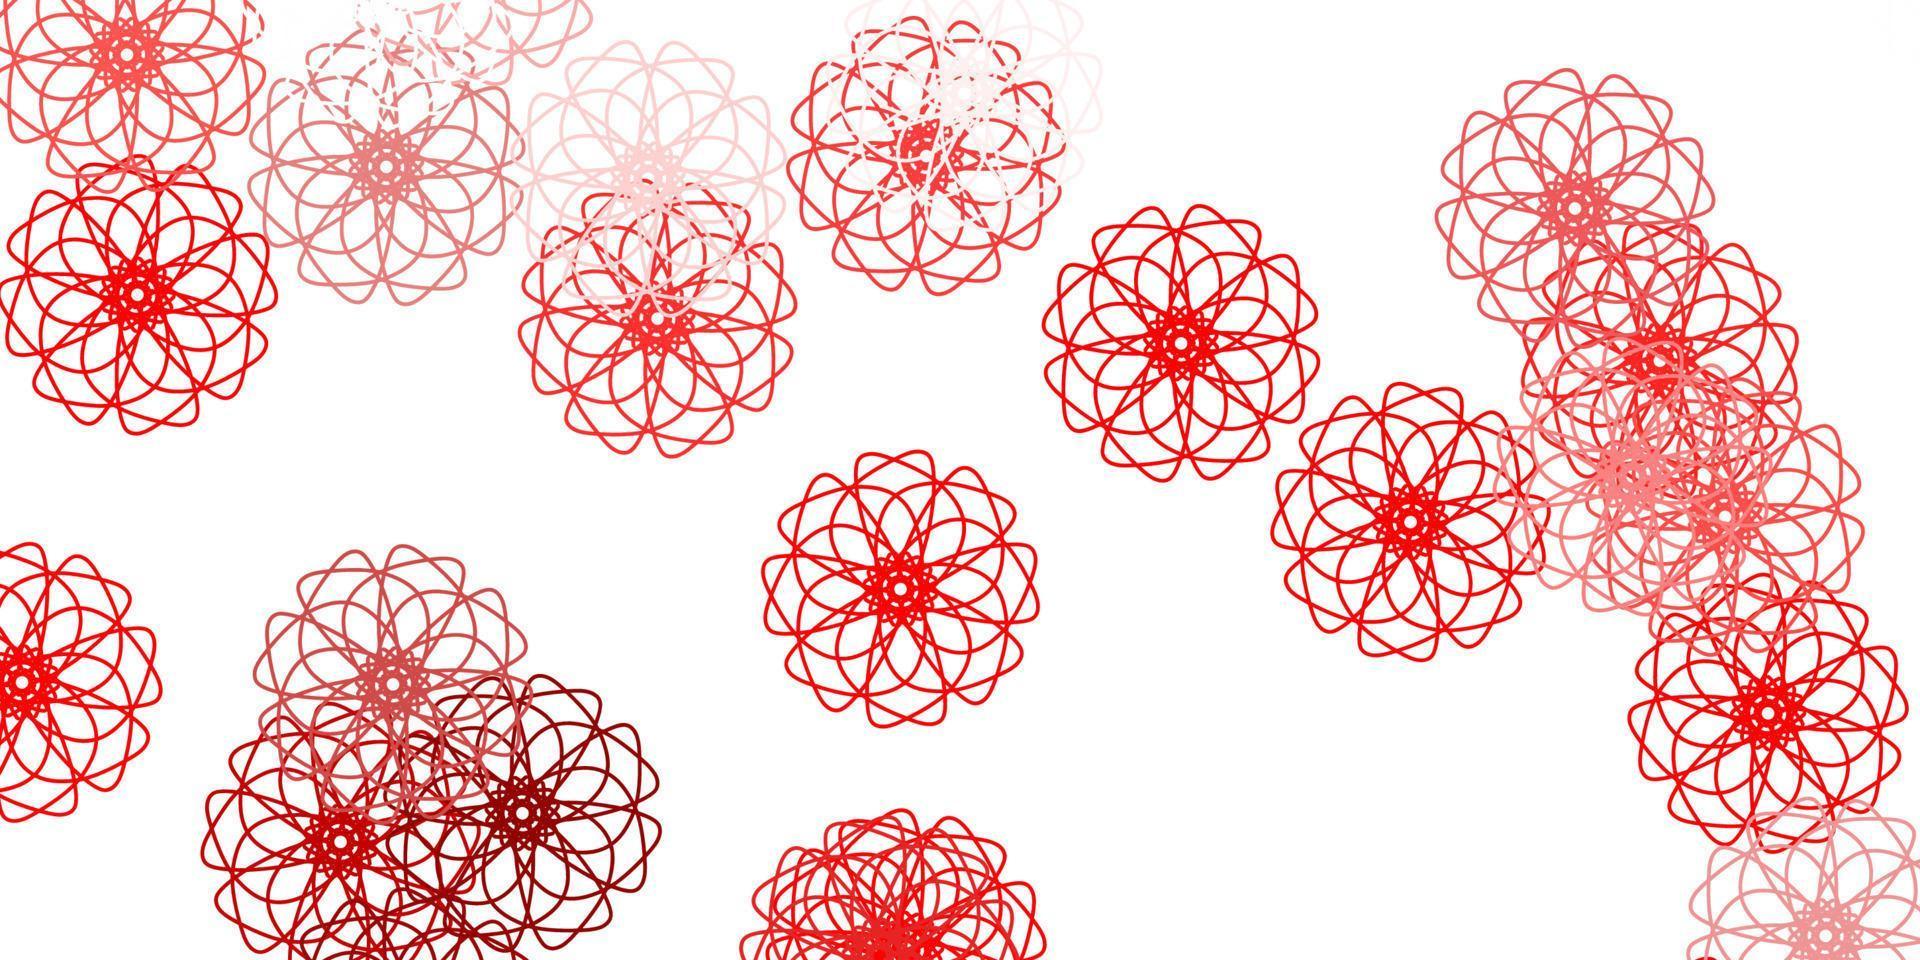 ilustraciones naturales del vector rojo claro, amarillo con flores.